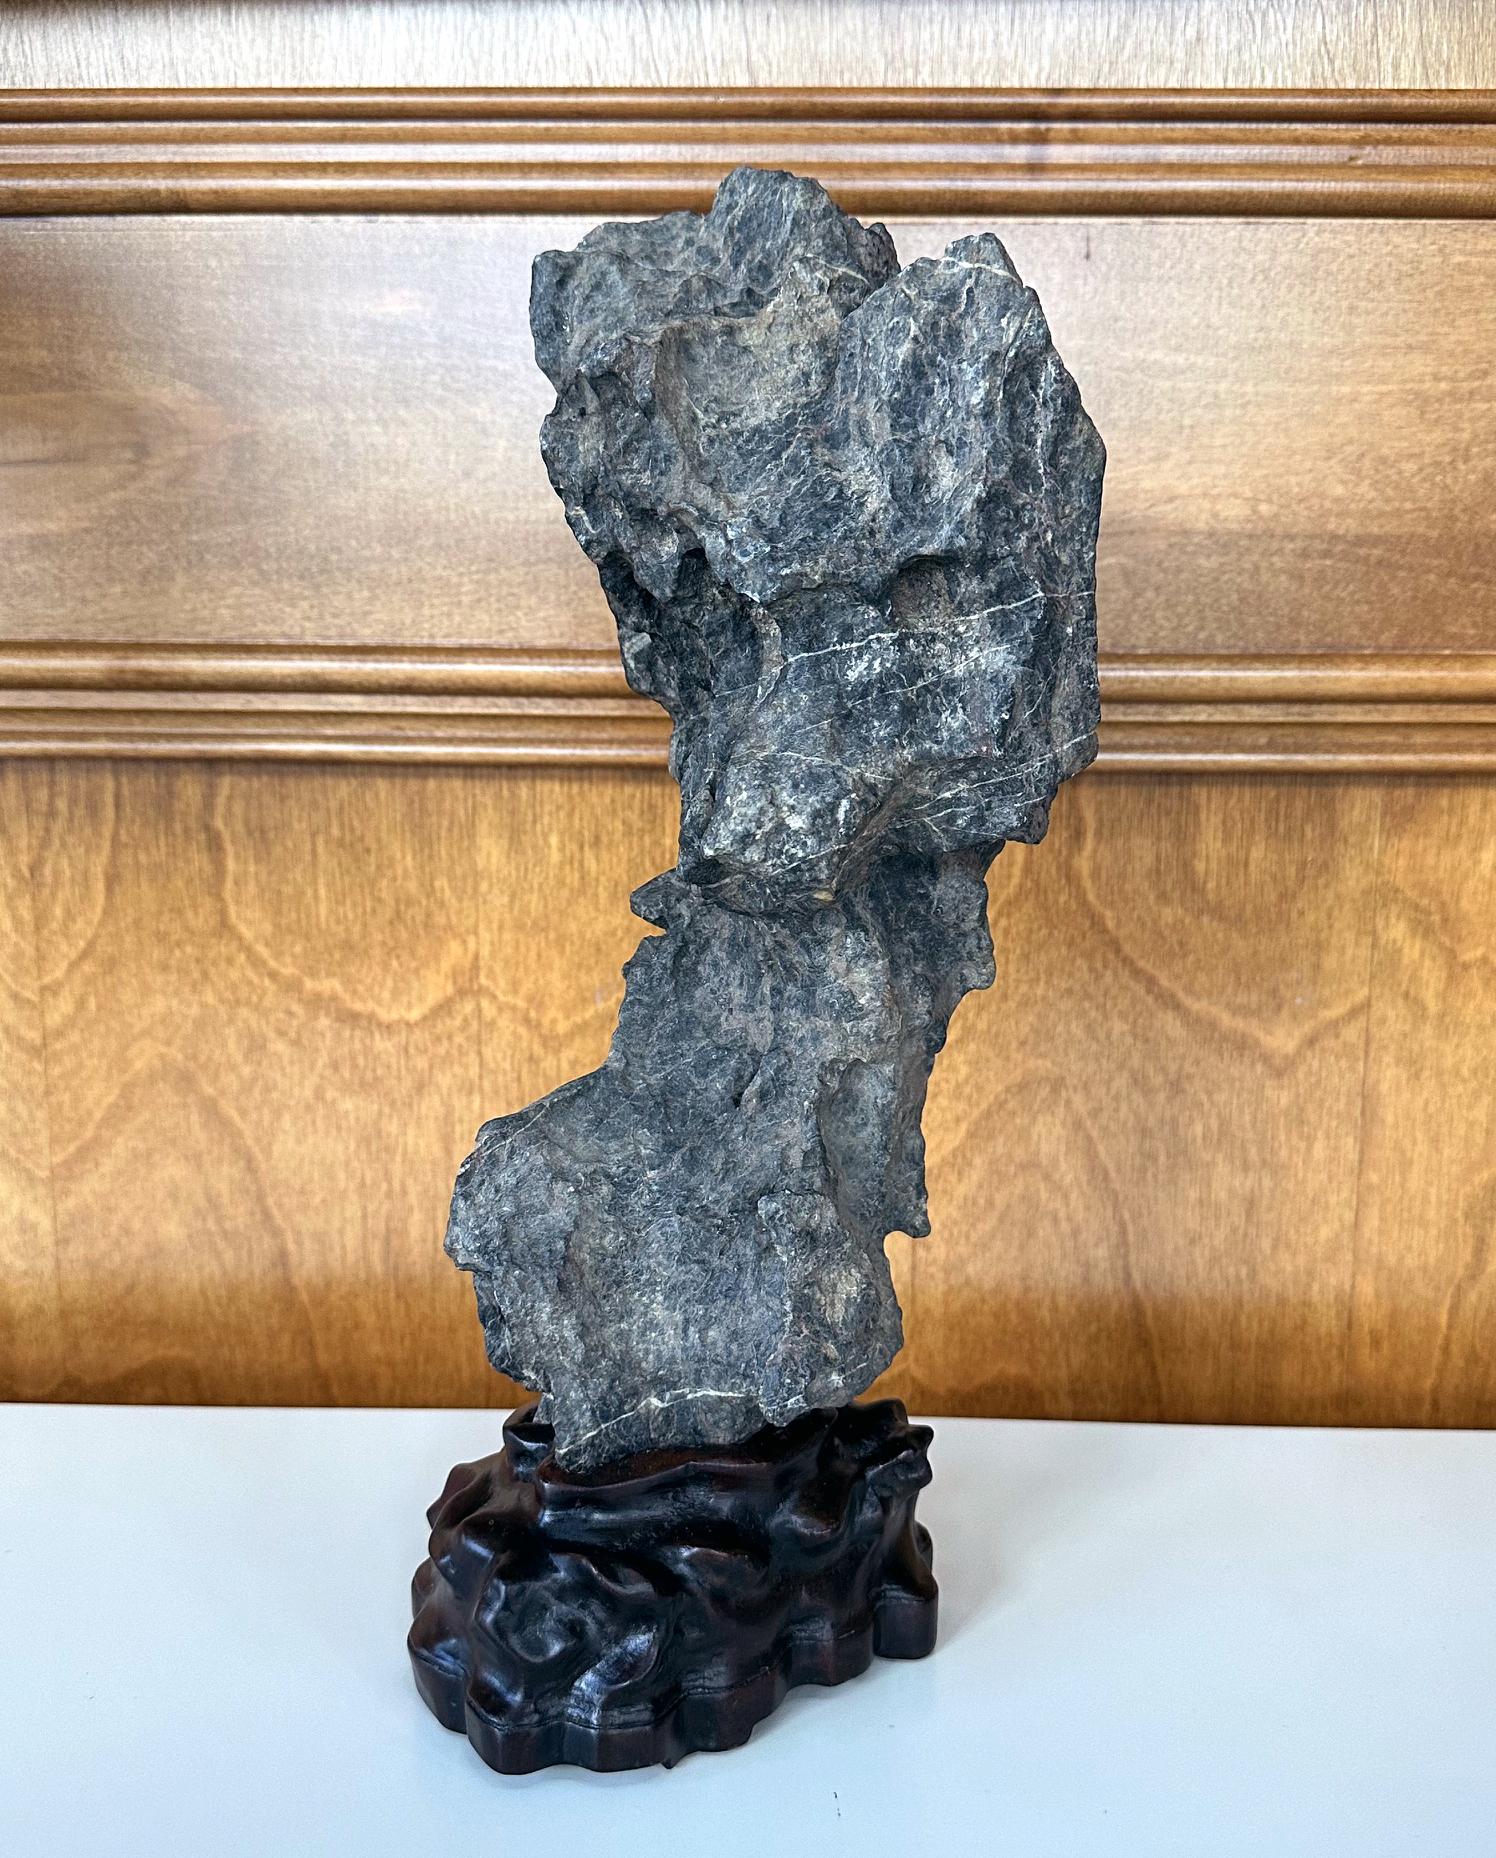 Une intrigante pierre de lettré chinoise de forme verticale présentée sur un socle en bois sculpté à la main vers la fin de la dynastie Qing. La pierre noire grisâtre est de type Yingde. Sa forme droite est poétique et joliment équilibrée, rappelant